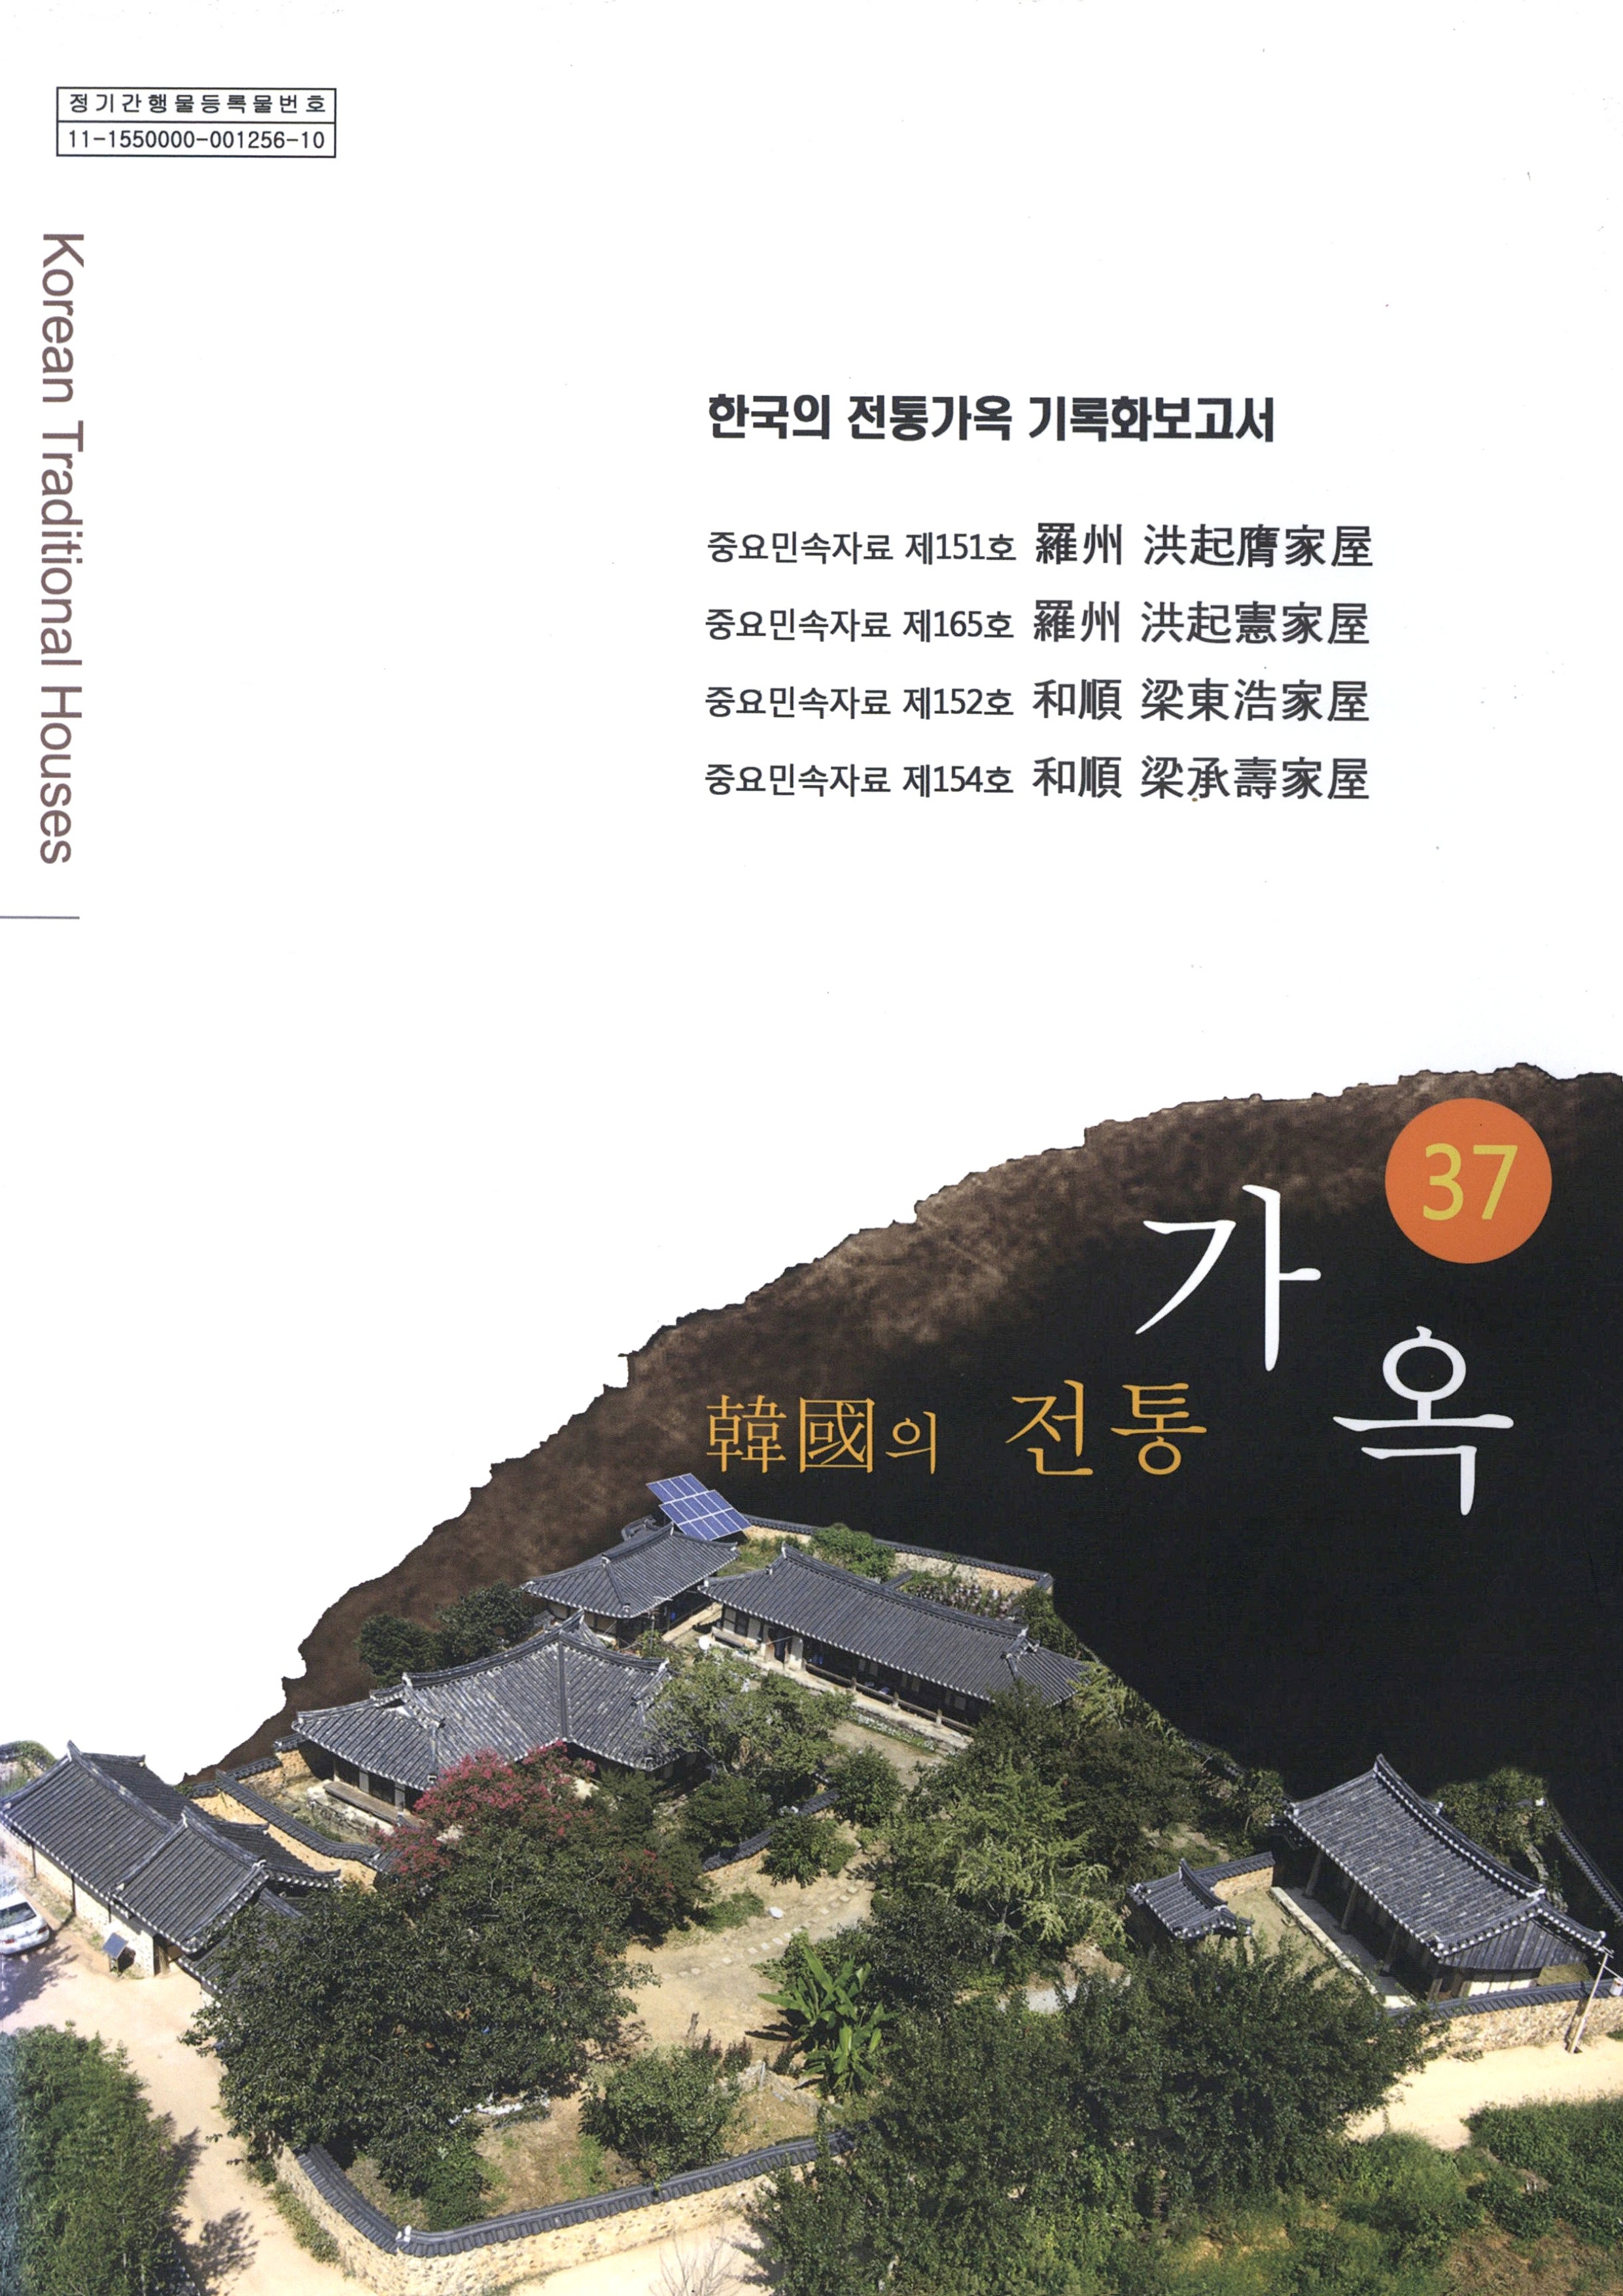 한국의 전통가옥 기록화보고서 한국의 전통가옥 37